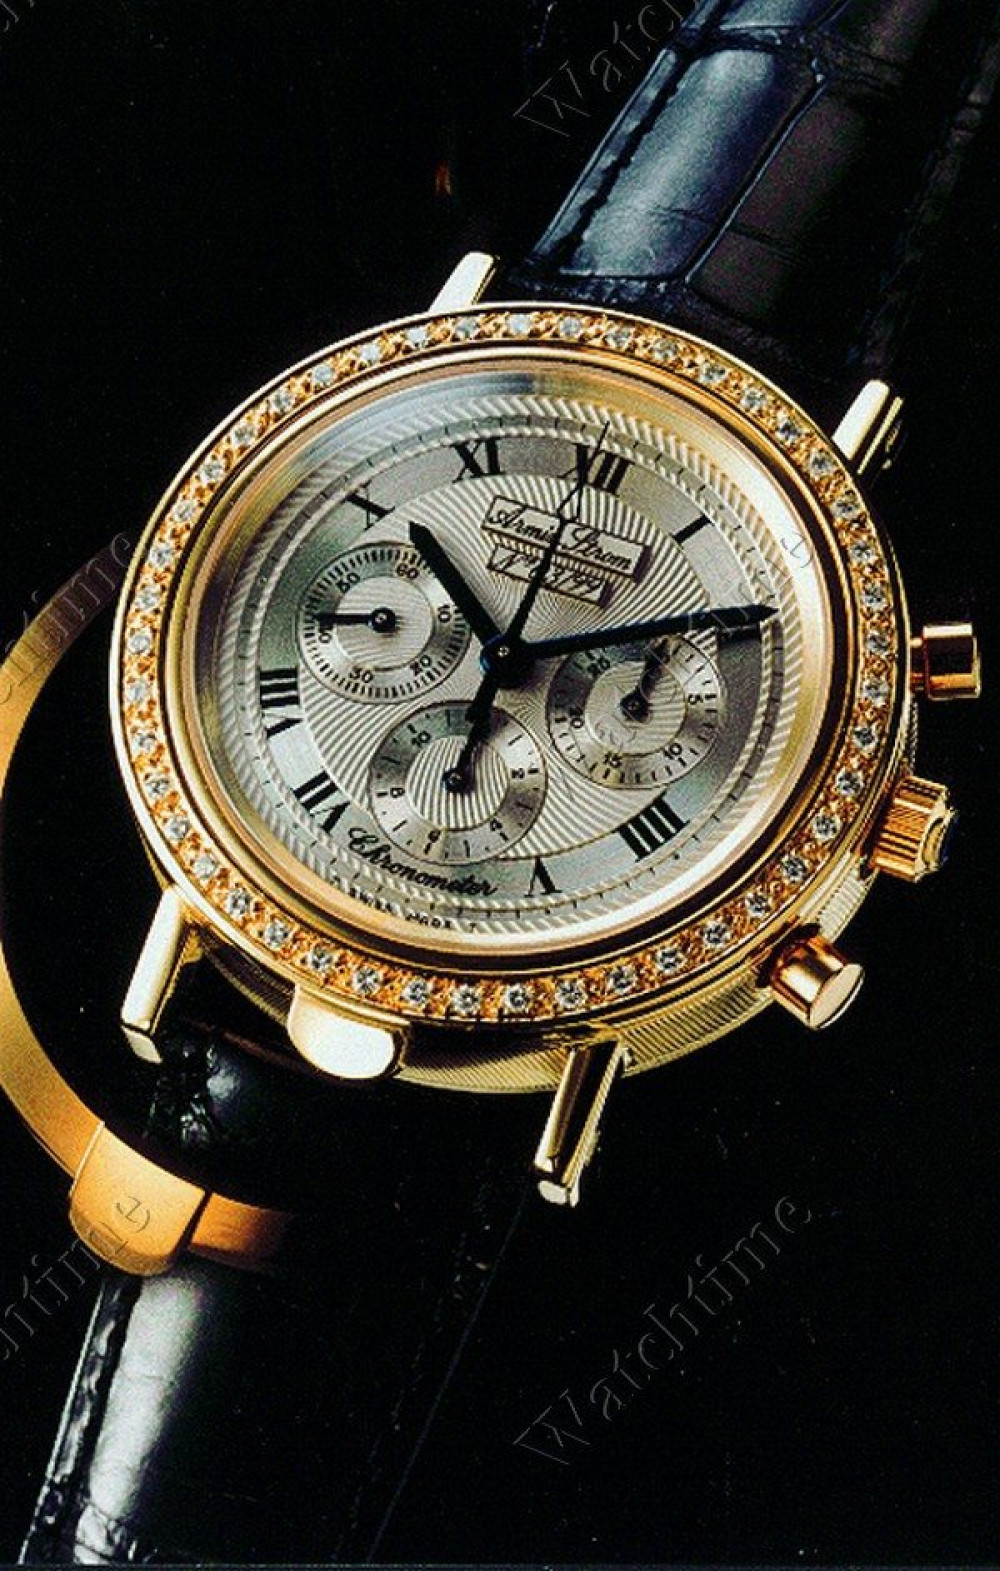 Zegarek firmy Armin Strom, model Chronograph